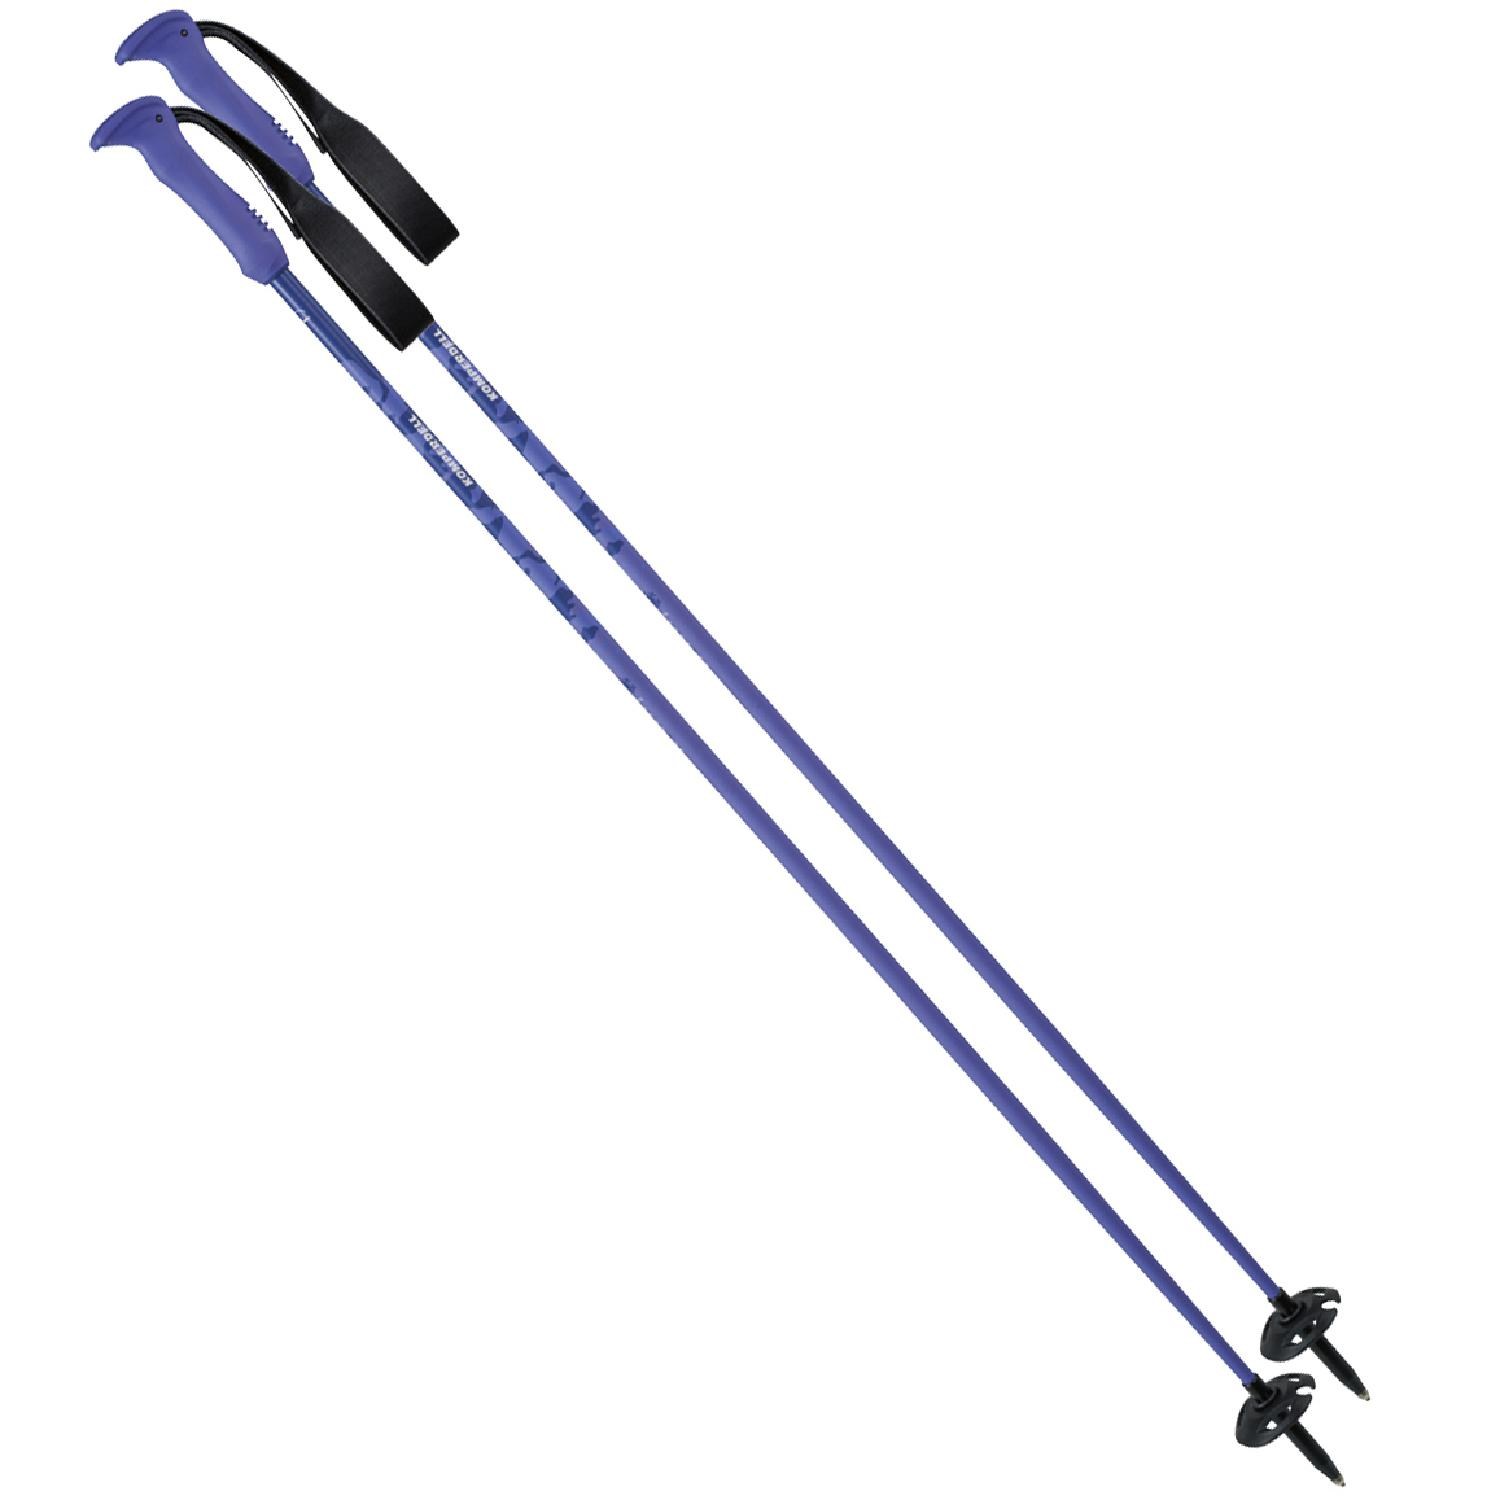 Лыжные палки D'scent TI — пара Komperdell, фиолетовый